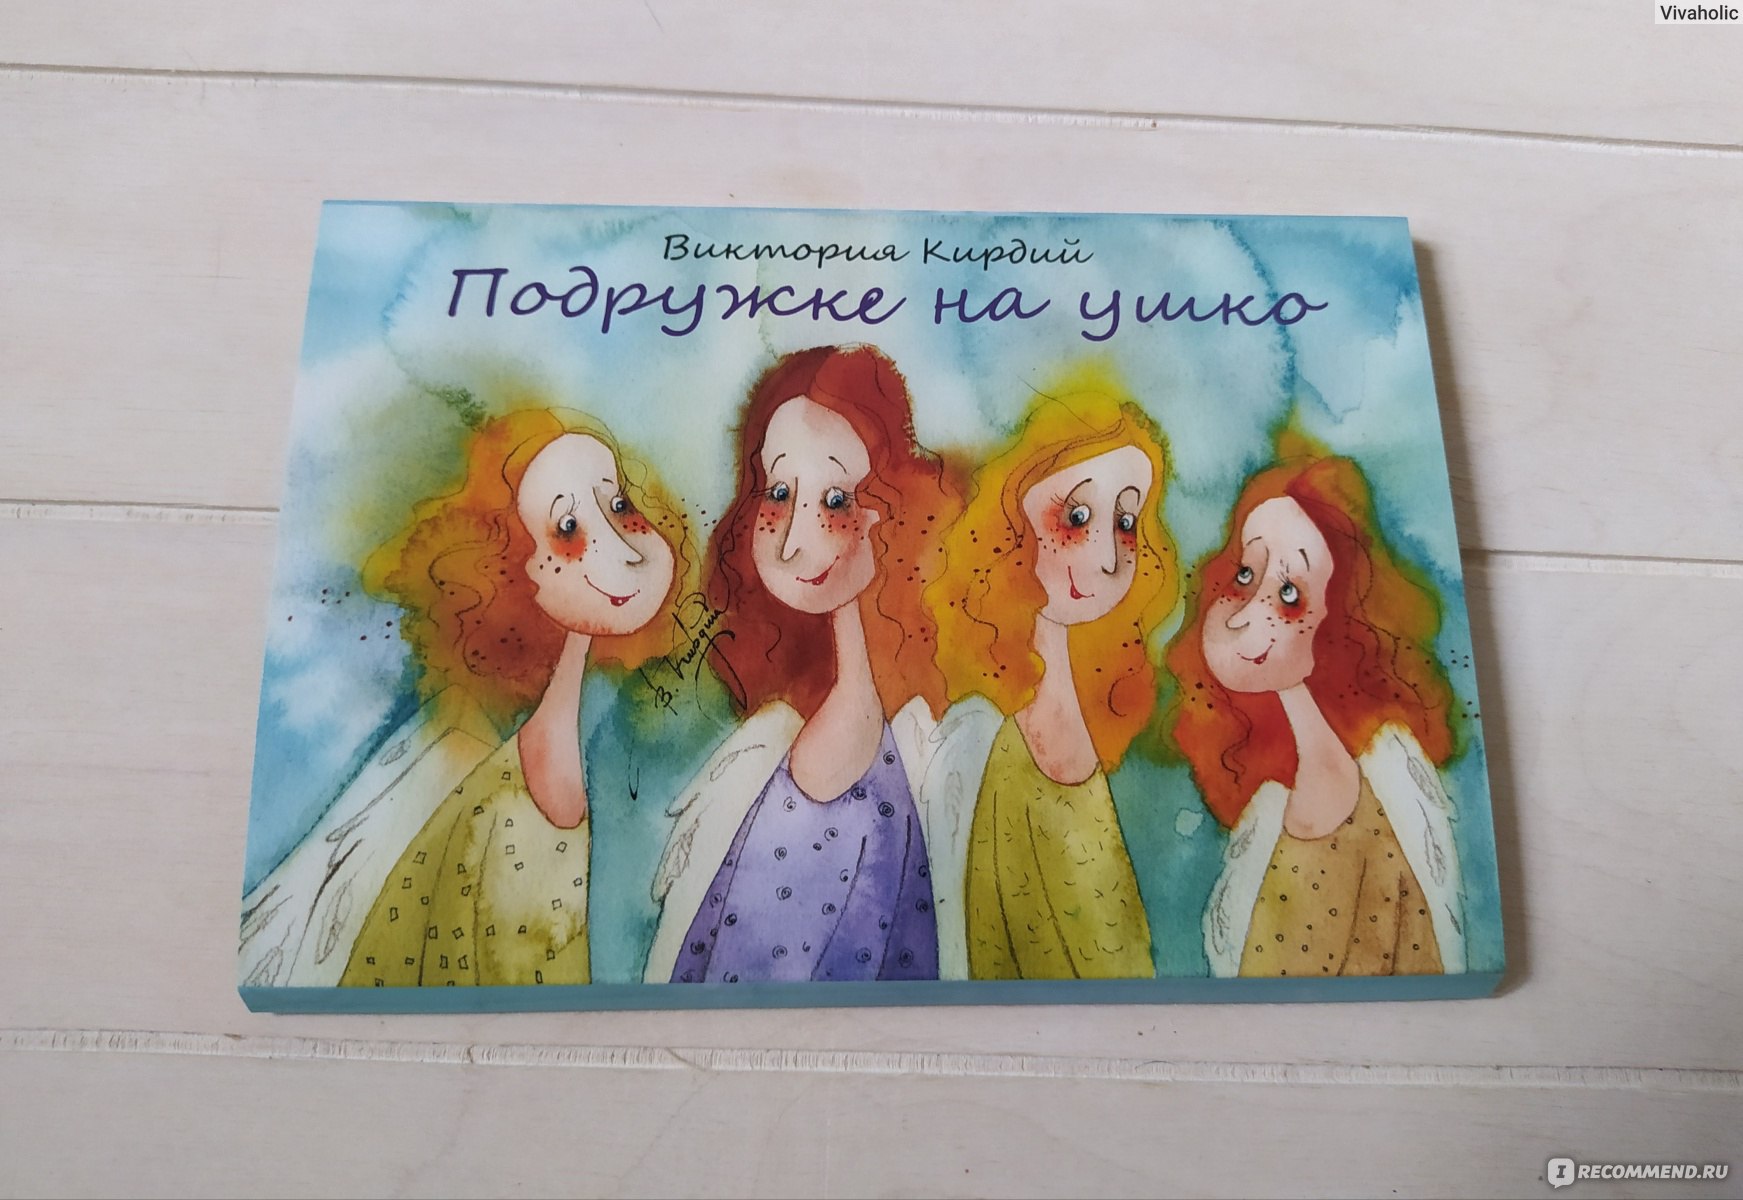 Виктория Кирдий открытки с надписями улыбки для друзей